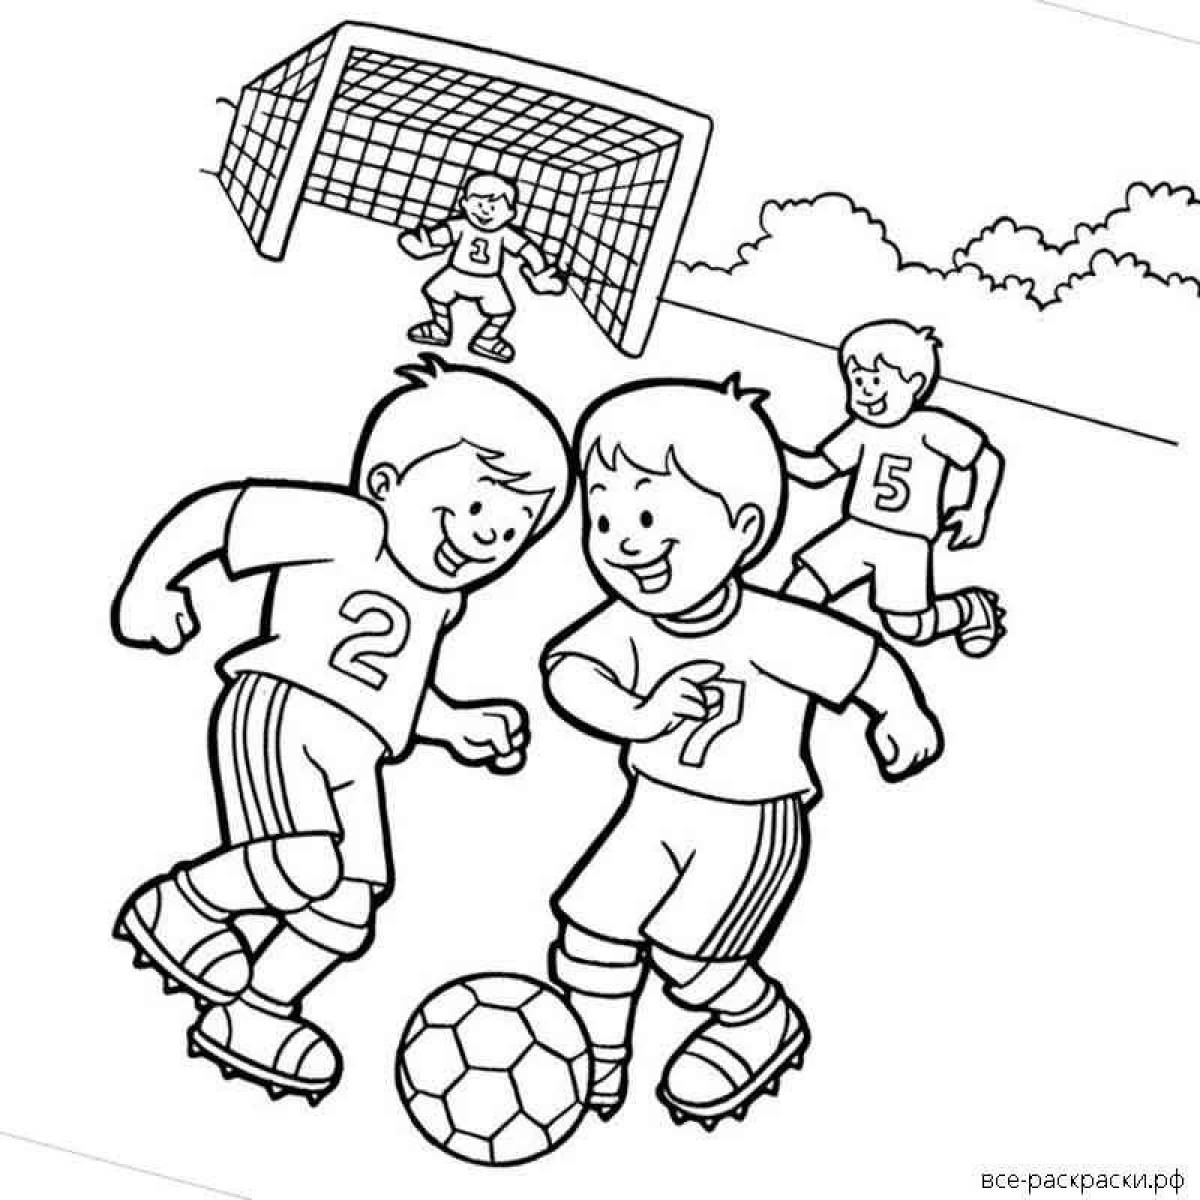 Игра любимая команда. Раскраска на тему футбол для детей. Рисунок на тему футбол. Детские рисунки на тему футбол. Футболист раскраска для детей.